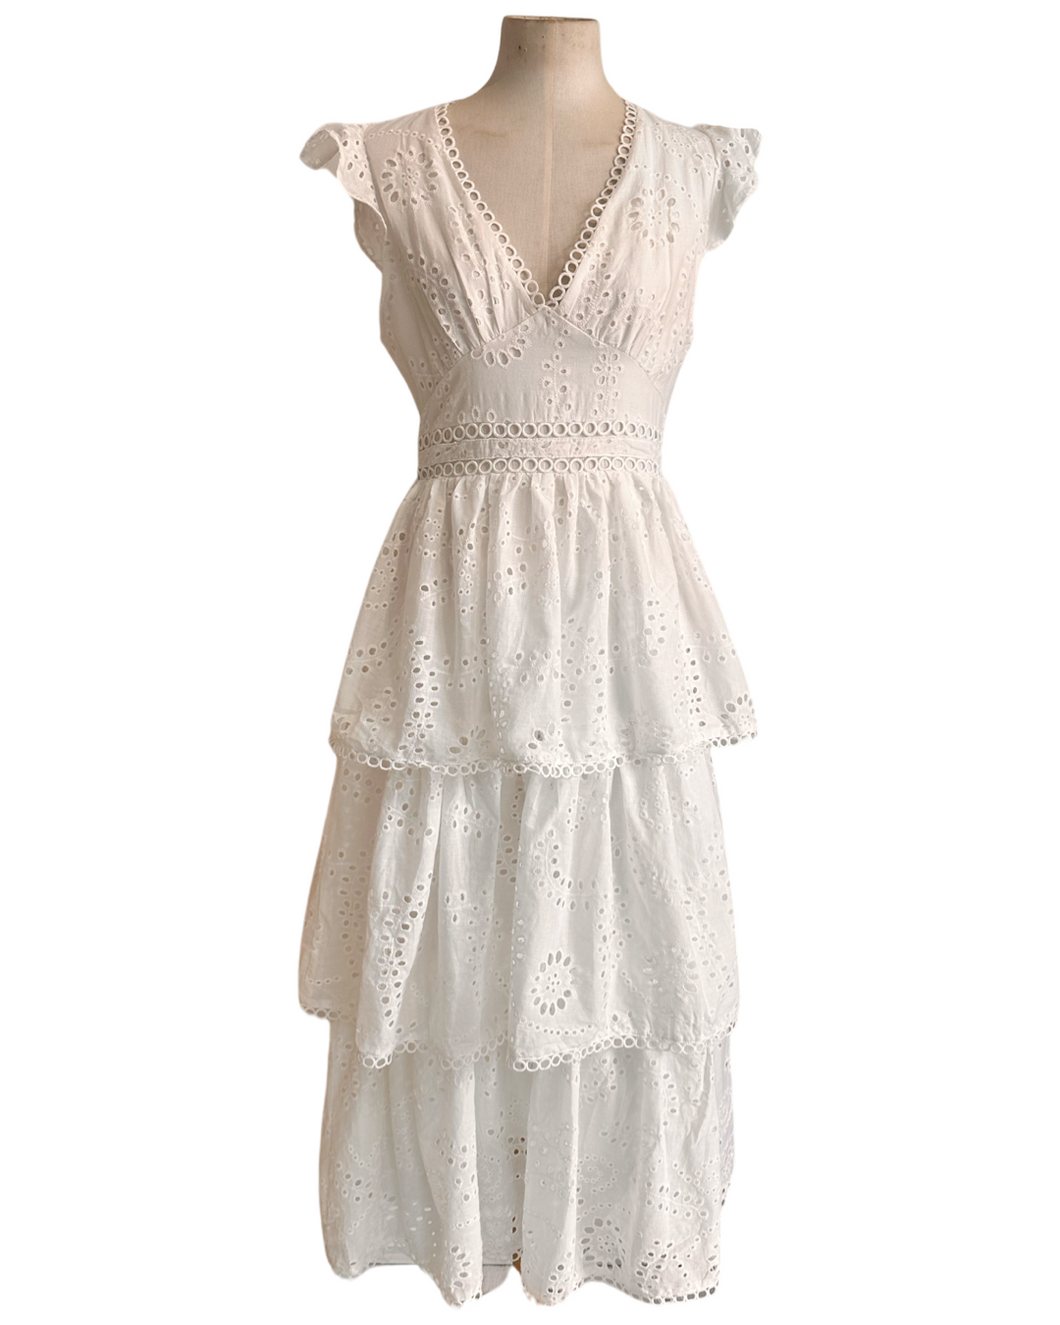 PORTOFINO DRESS white